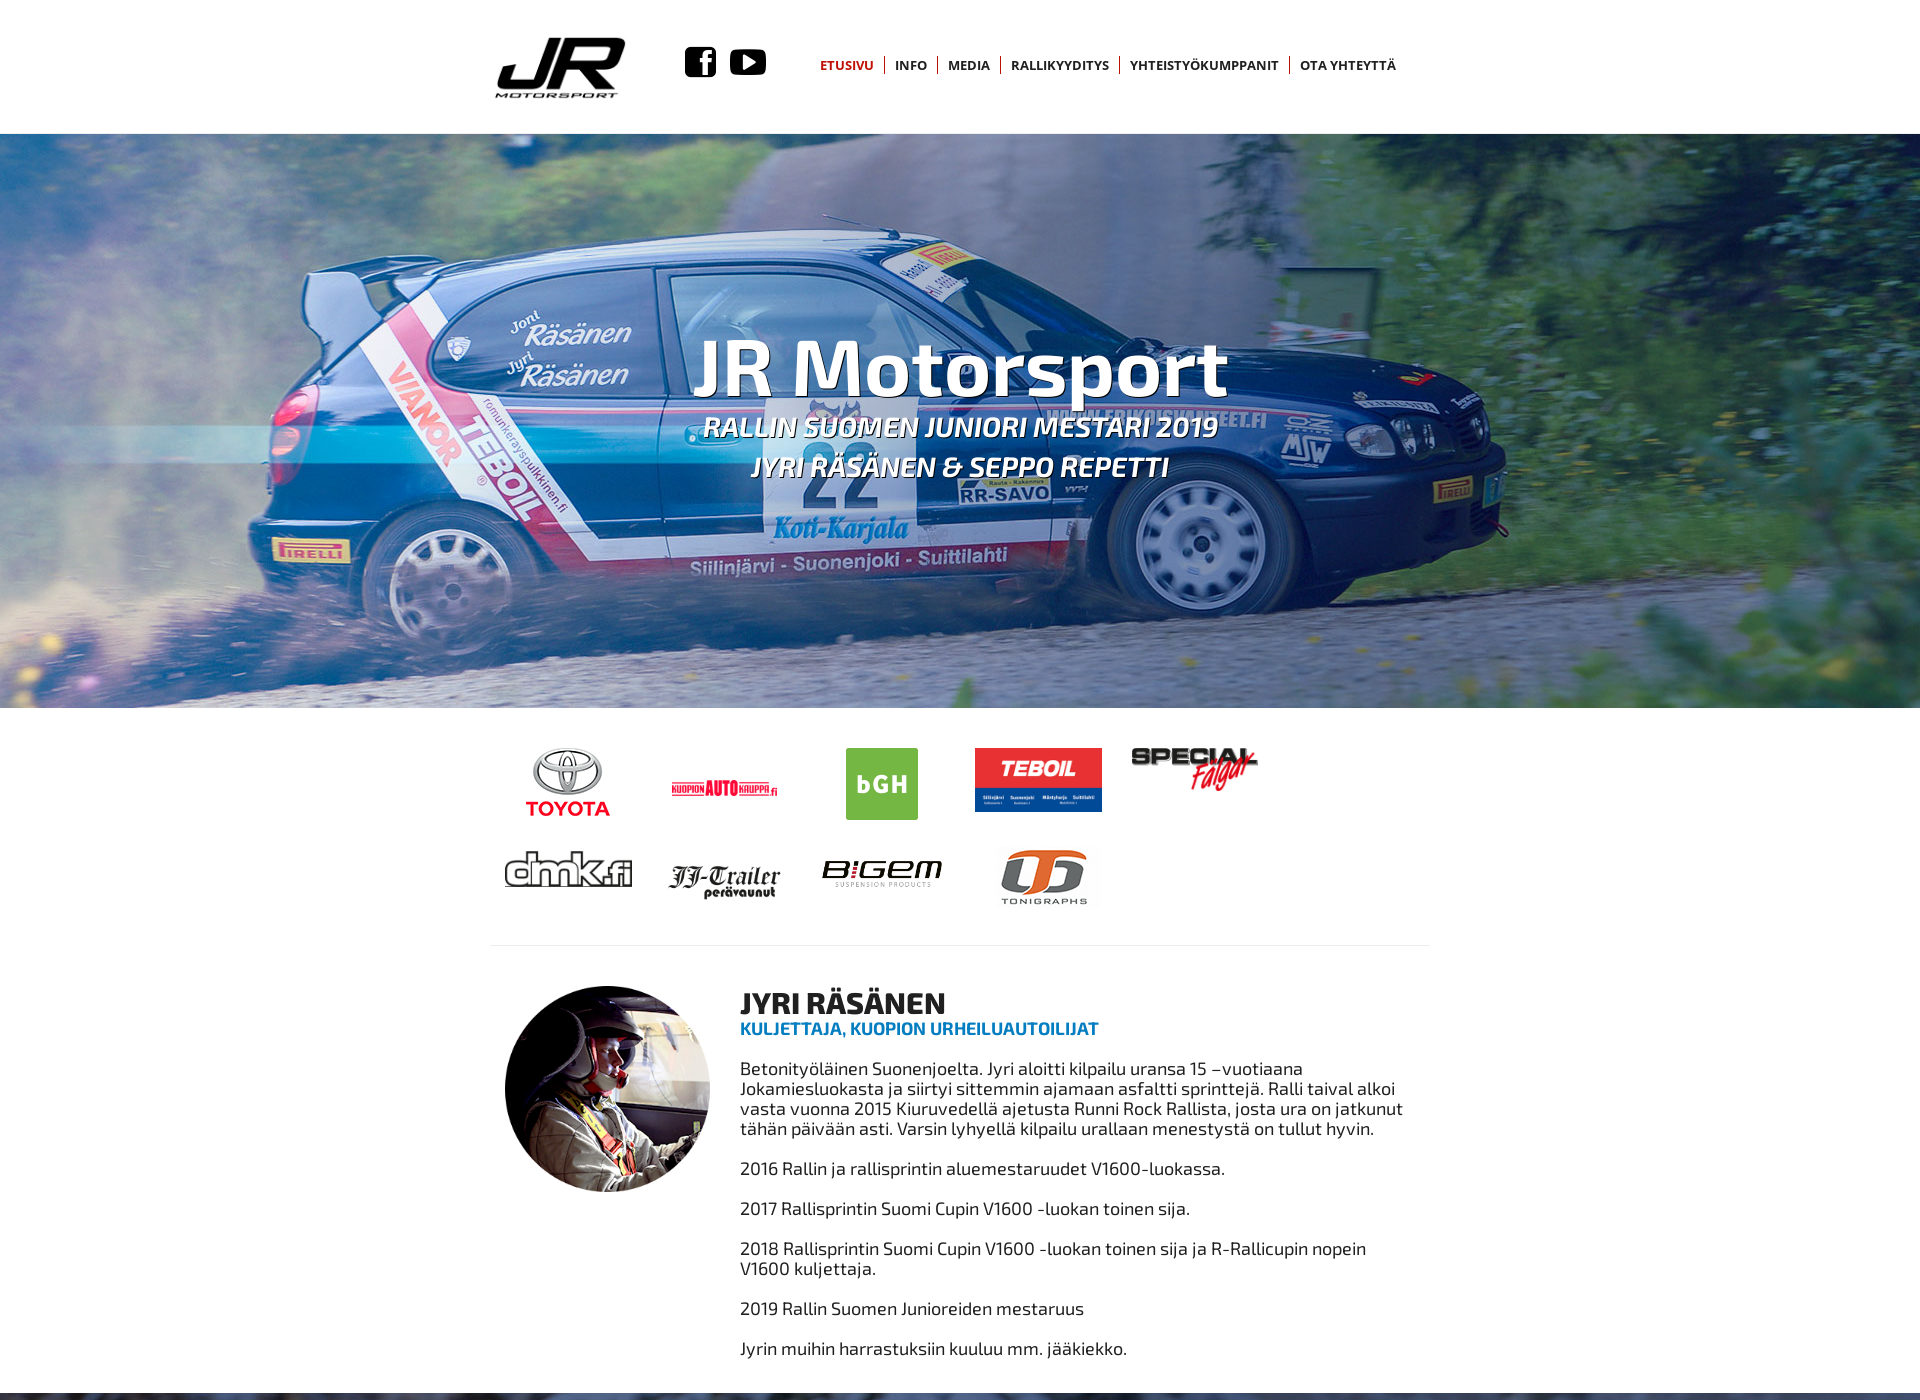 Näyttökuva jrmotorsport.fi